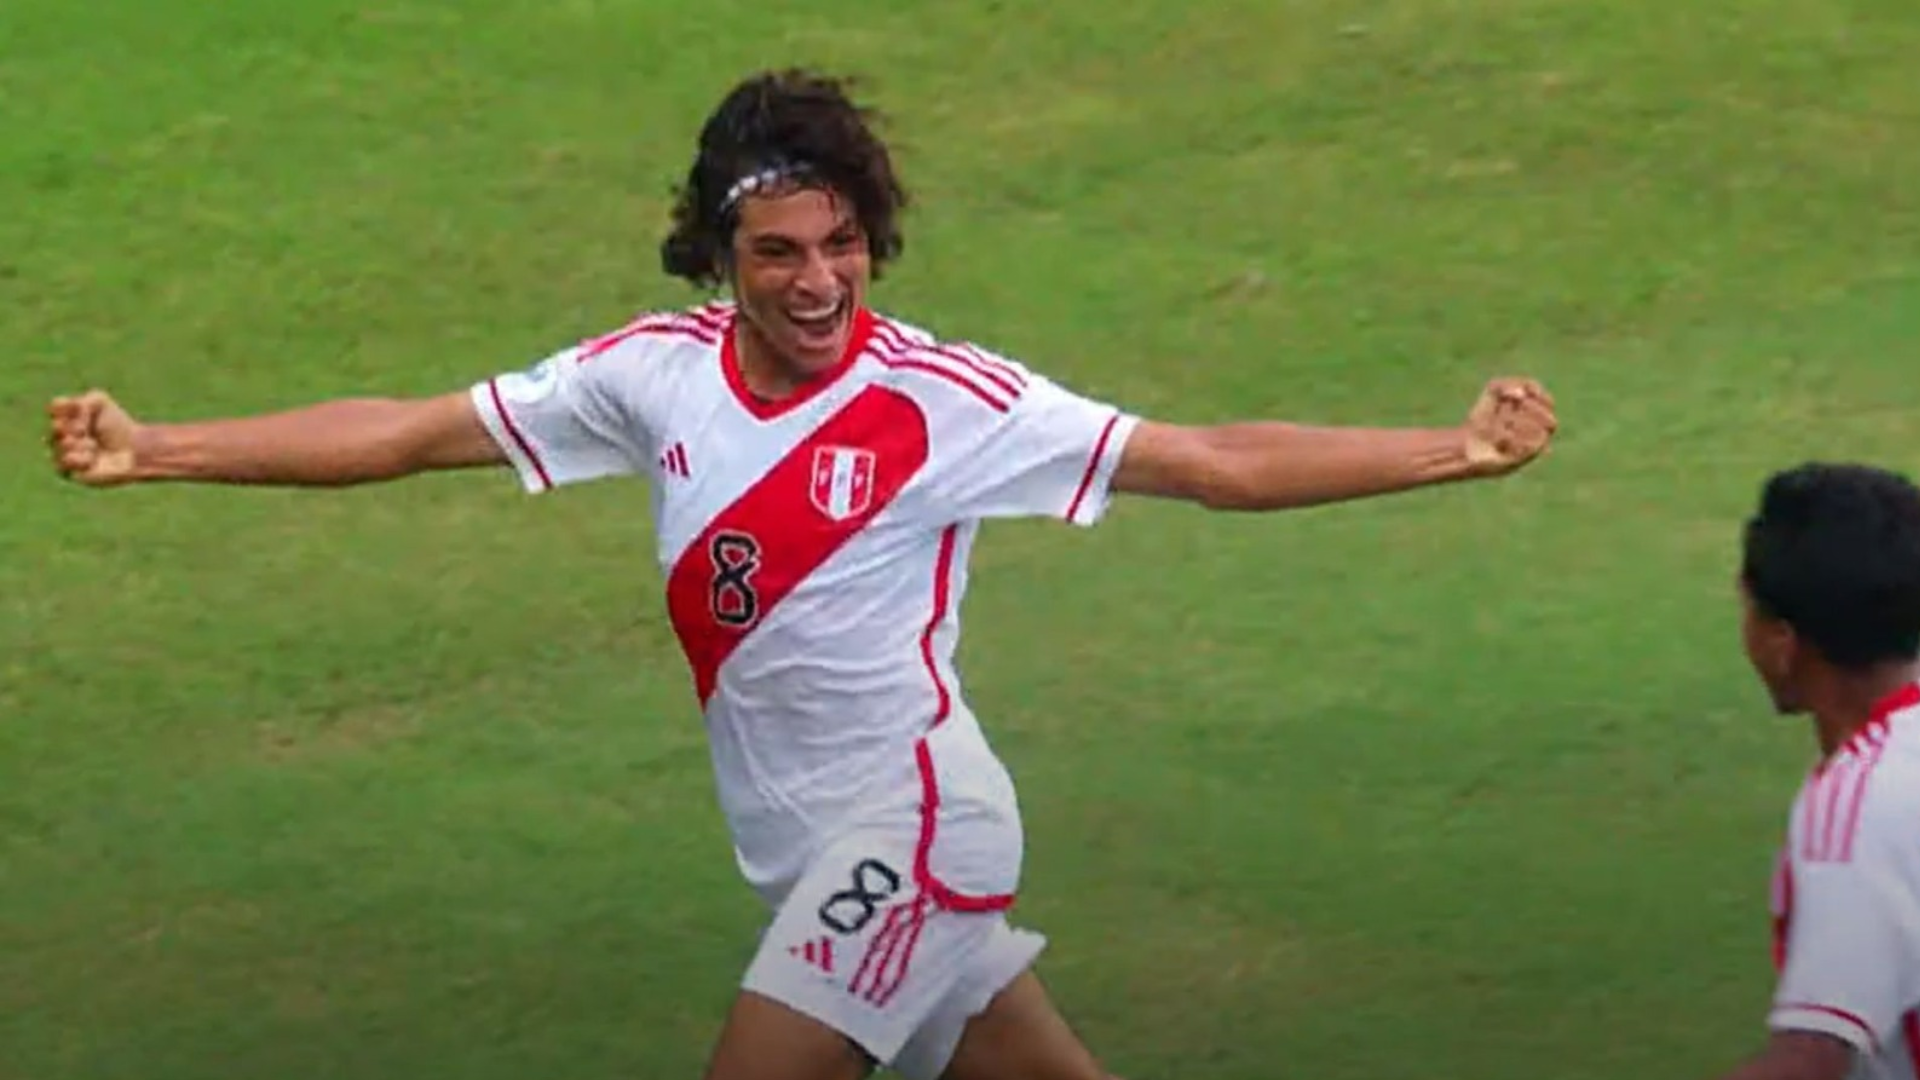 Golazo de Bassco Soyer tras contragolpe perfecto para el 1-0 de Perú vs Bolivia por Sudamericano sub 17